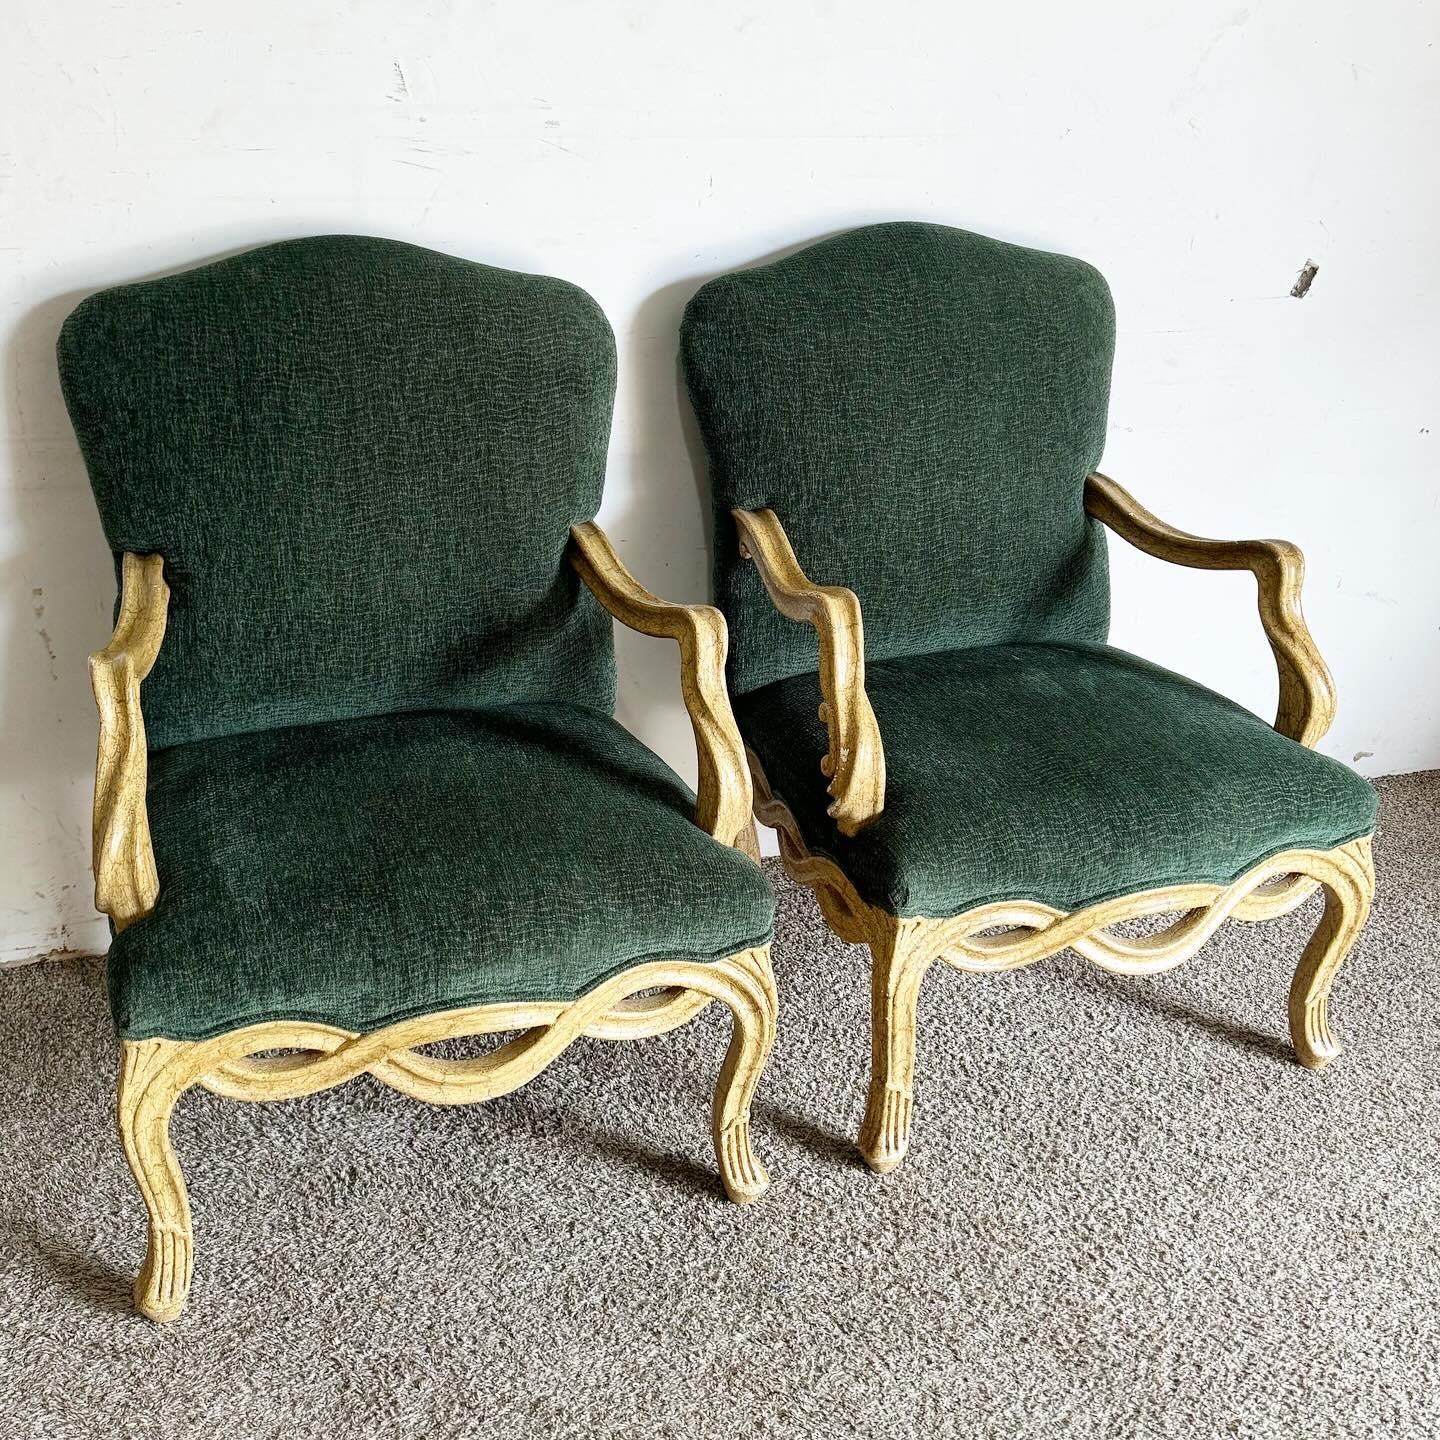 Lassen Sie sich von der zeitlosen Eleganz der French Provincial Green Armchairs verzaubern, die durch einen einzigartigen, gedrechselten Holzrahmen ergänzt werden. Diese Sessel verbinden traditionelle Handwerkskunst mit einer modernen Note. Sie